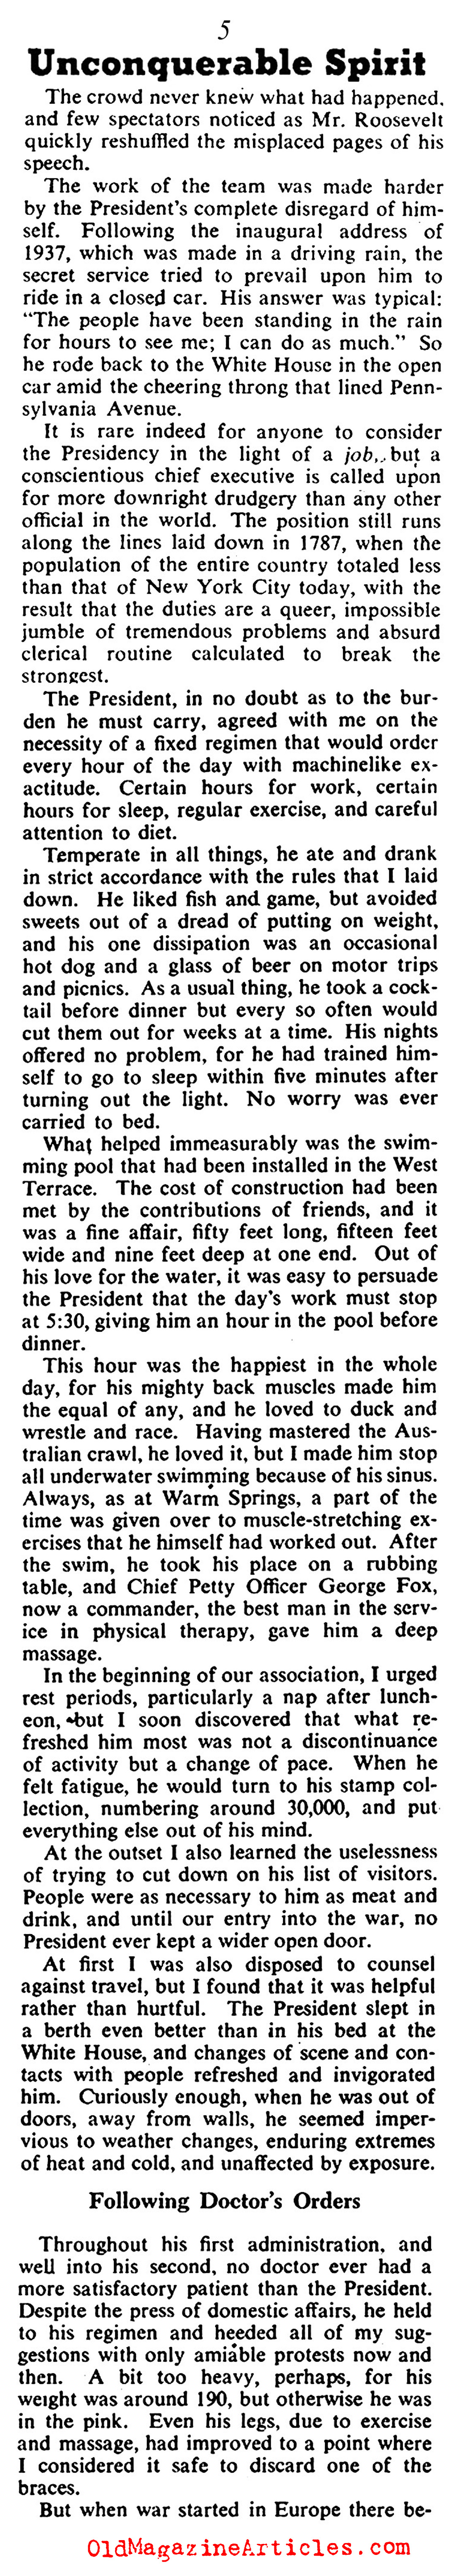 FDR's Doctor Speaks (Collier's Magazine, 1946)